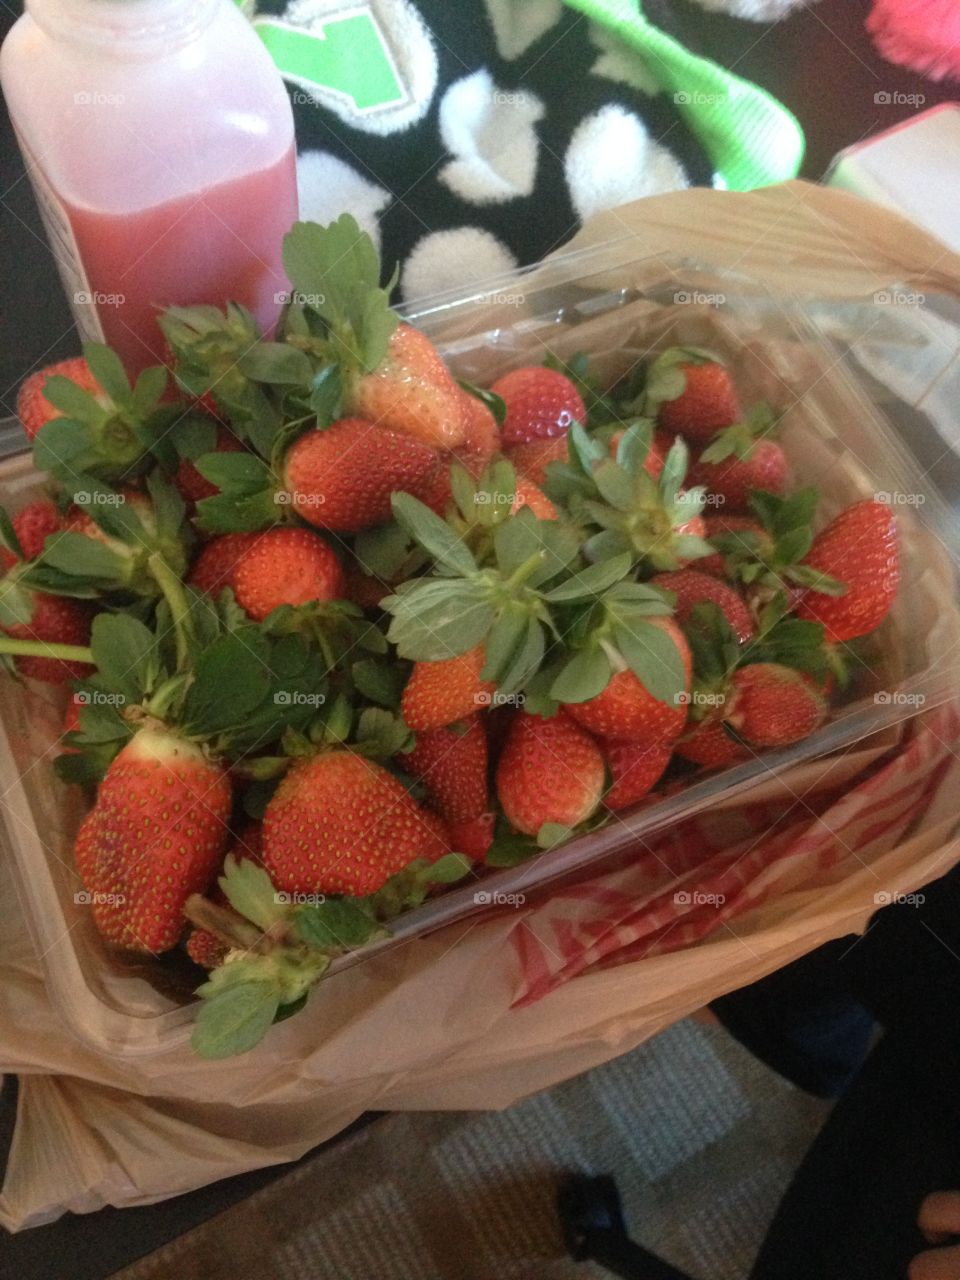 Strawberries
